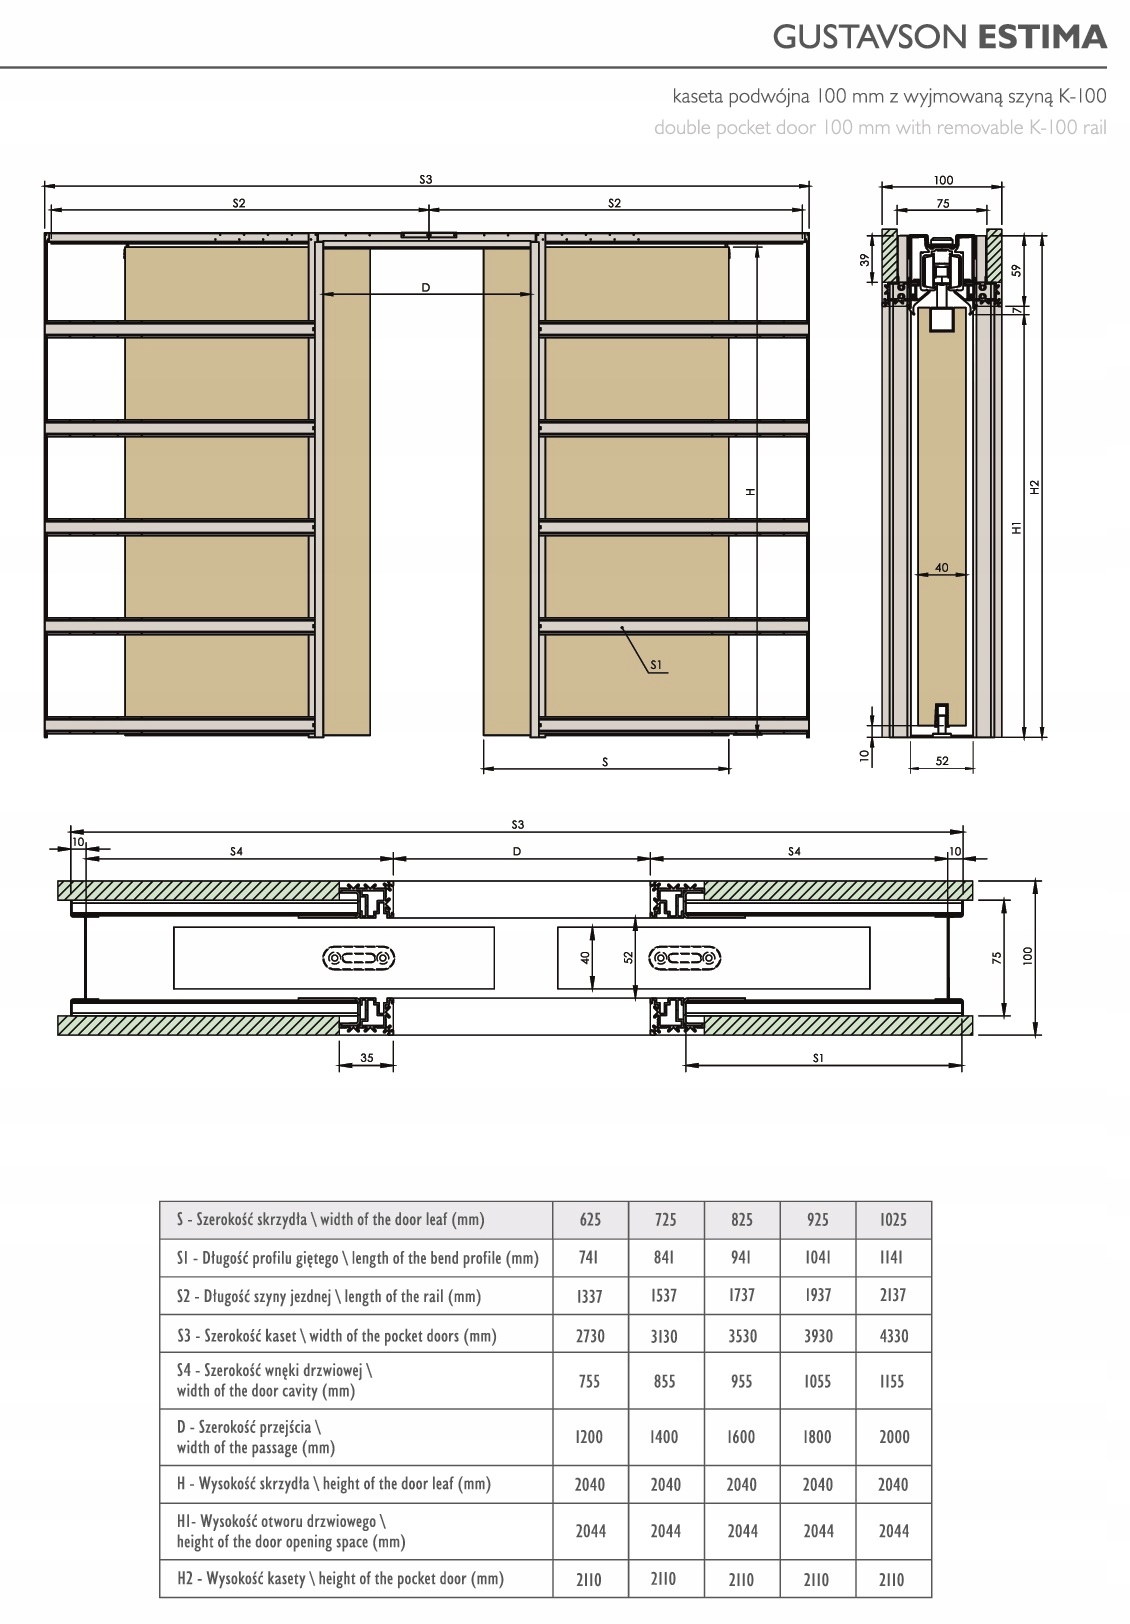 Drzwi przesuwne DRE Kaseta Podwójna Bezfutrynowa Kod producenta Drzwi DRE 40 mm w systemie bezościeżnico